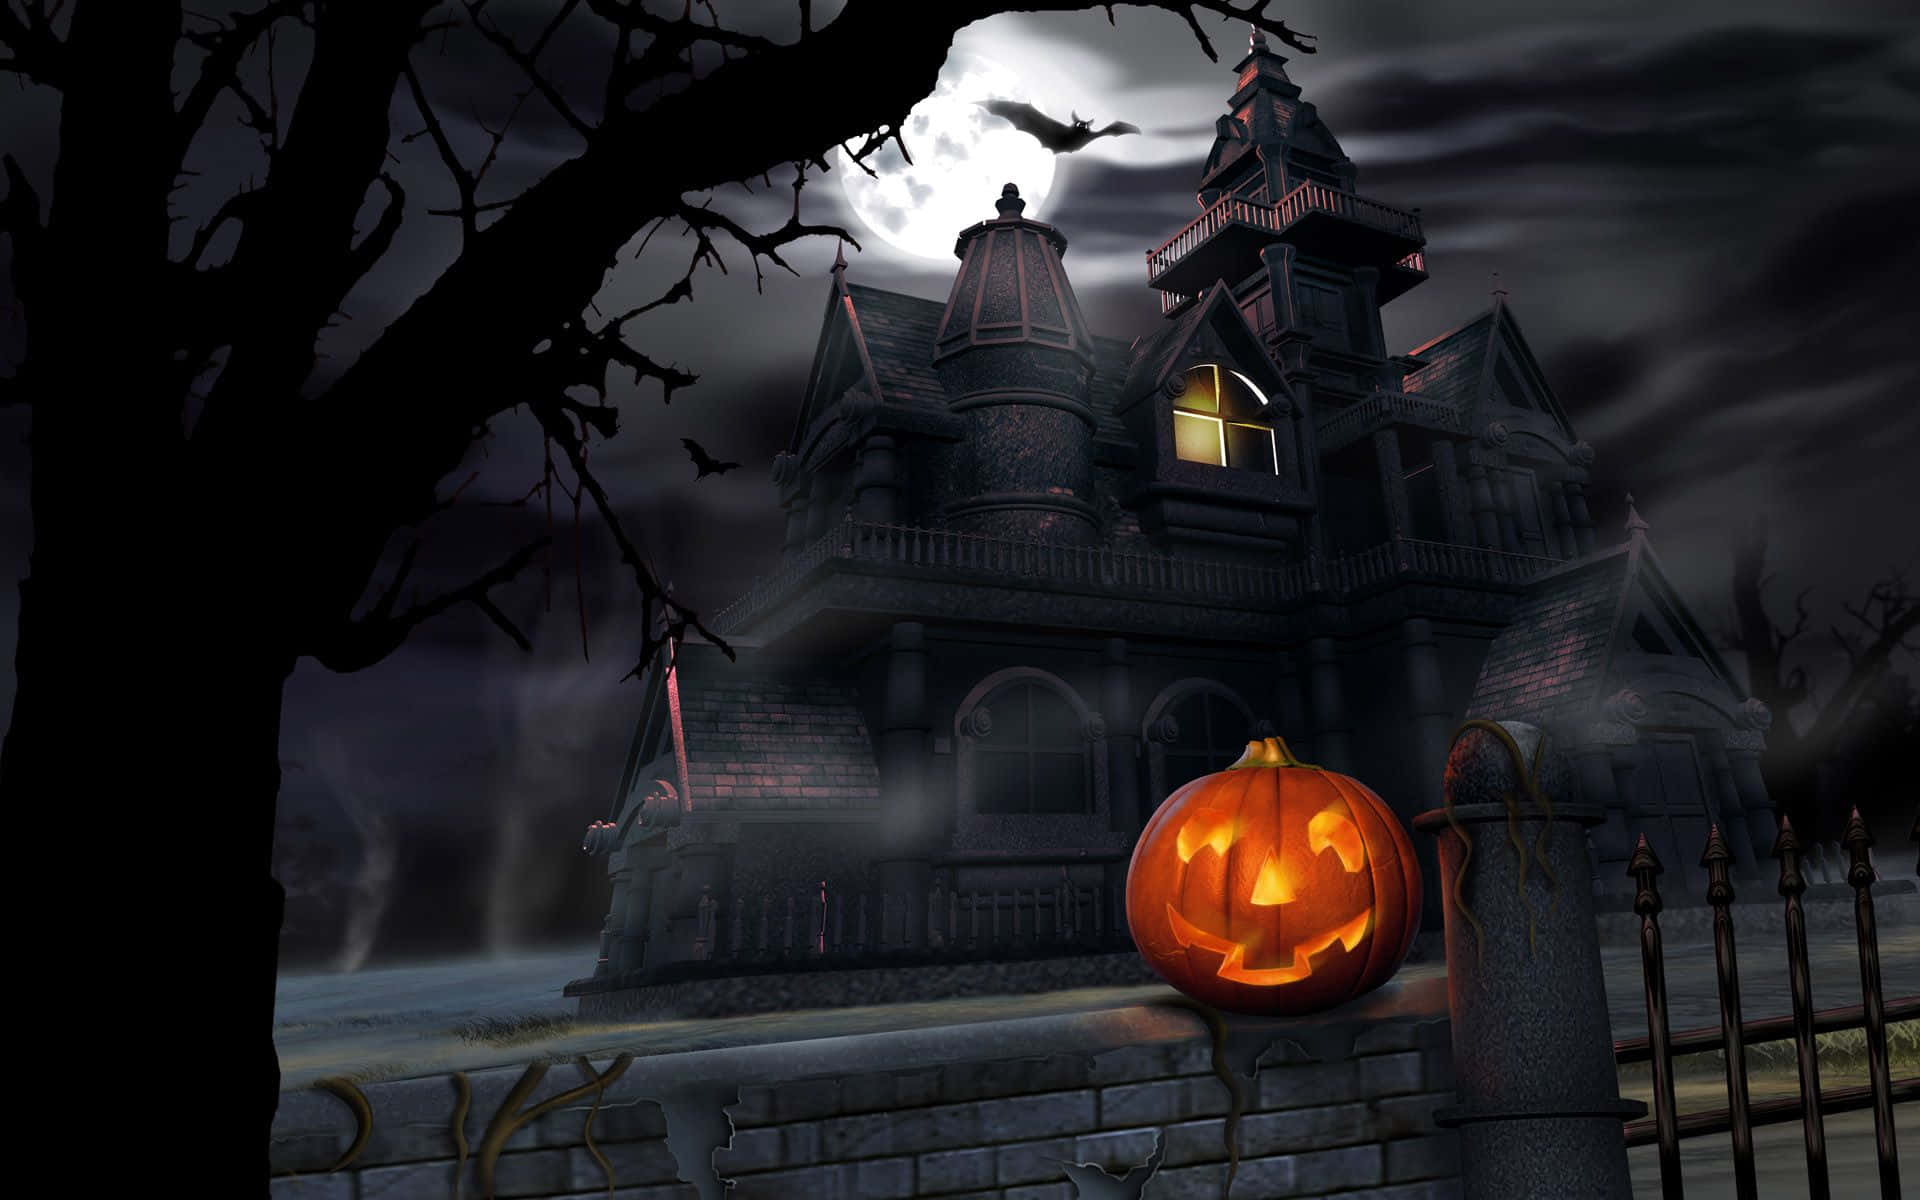 Gør dig klar til at have sjov i Halloween med skrækindjagende dekorationer! Wallpaper